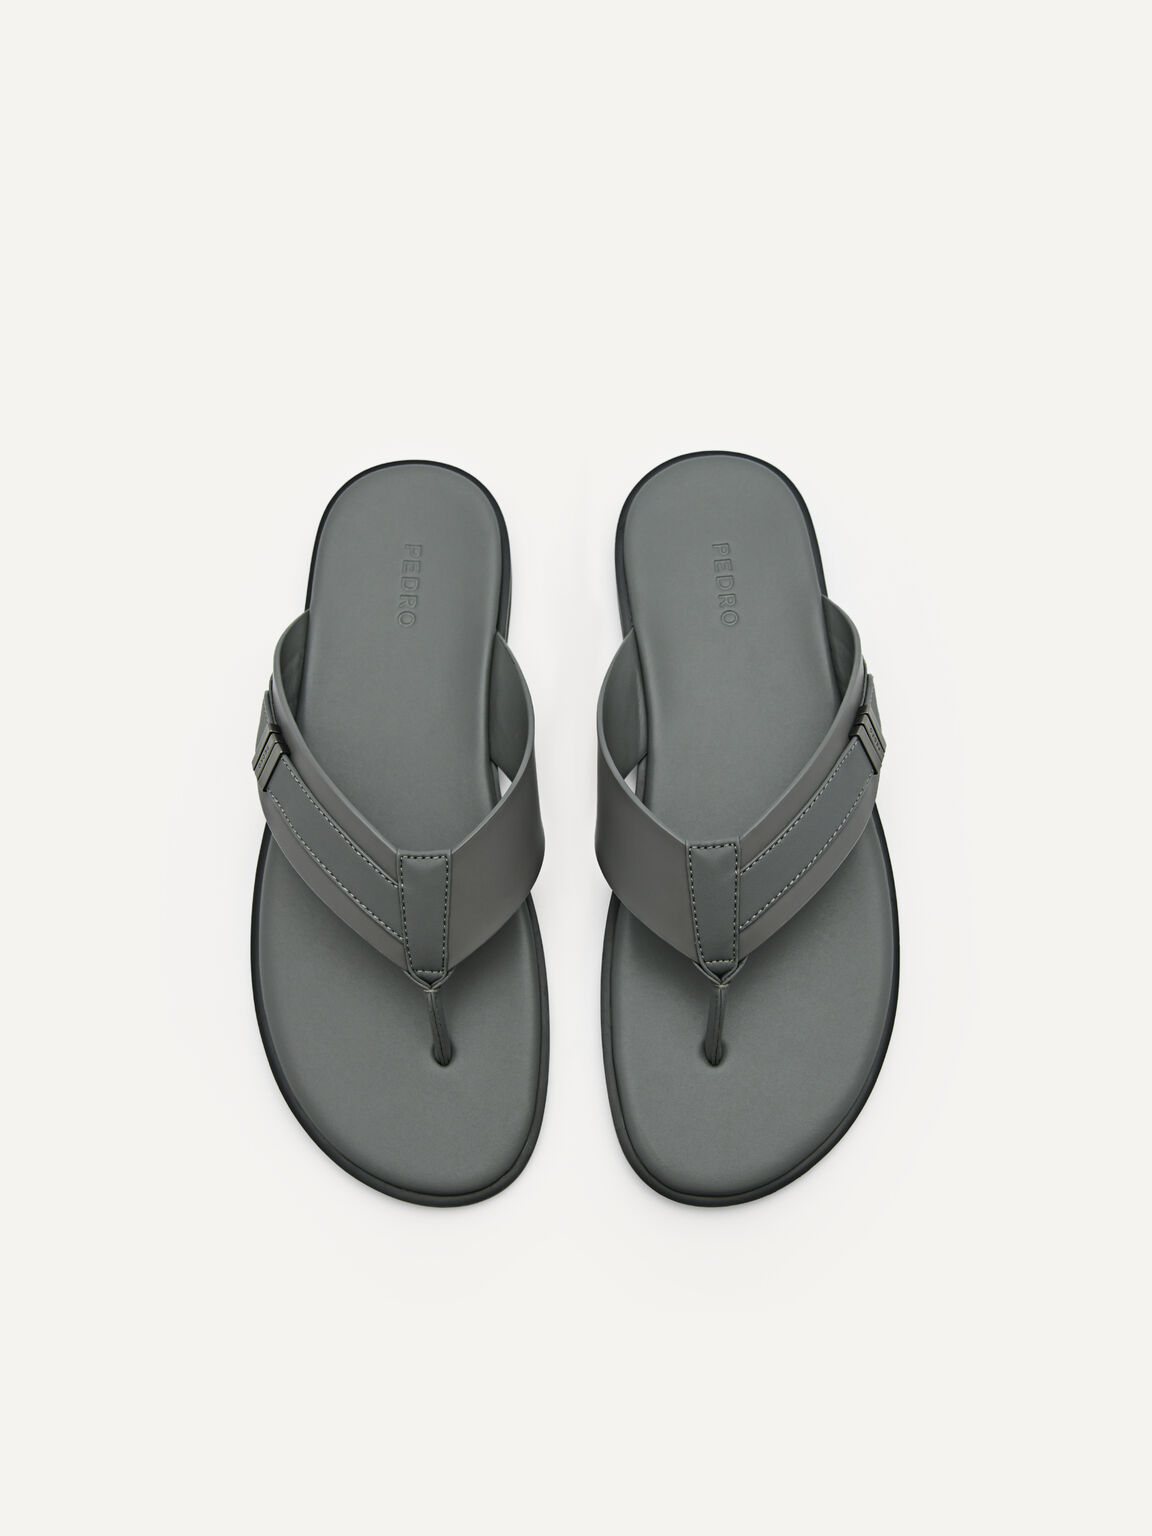 Thong Sandals, Dark Grey